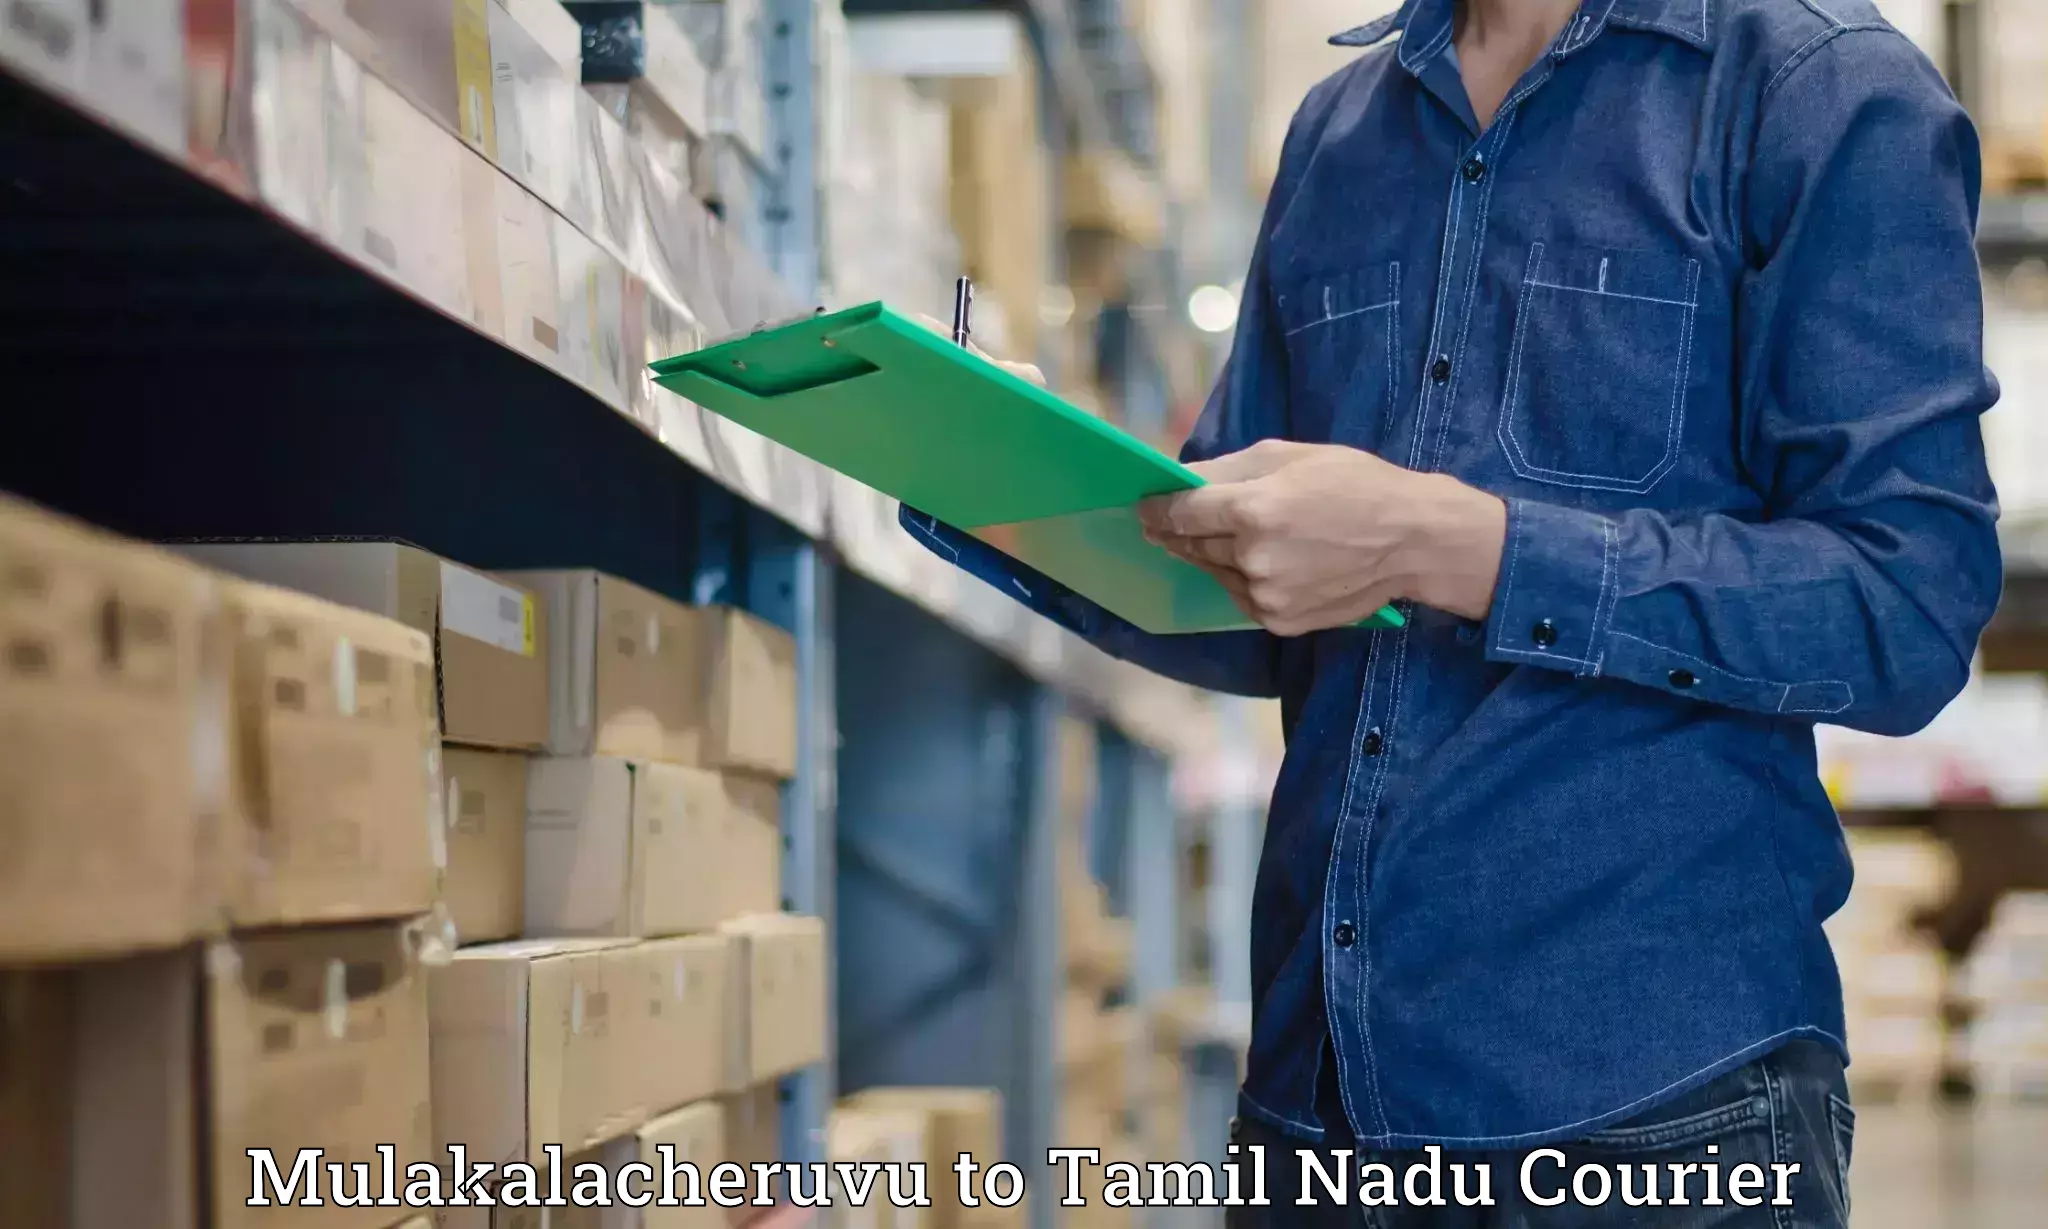 Cash on delivery service Mulakalacheruvu to Tamil Nadu